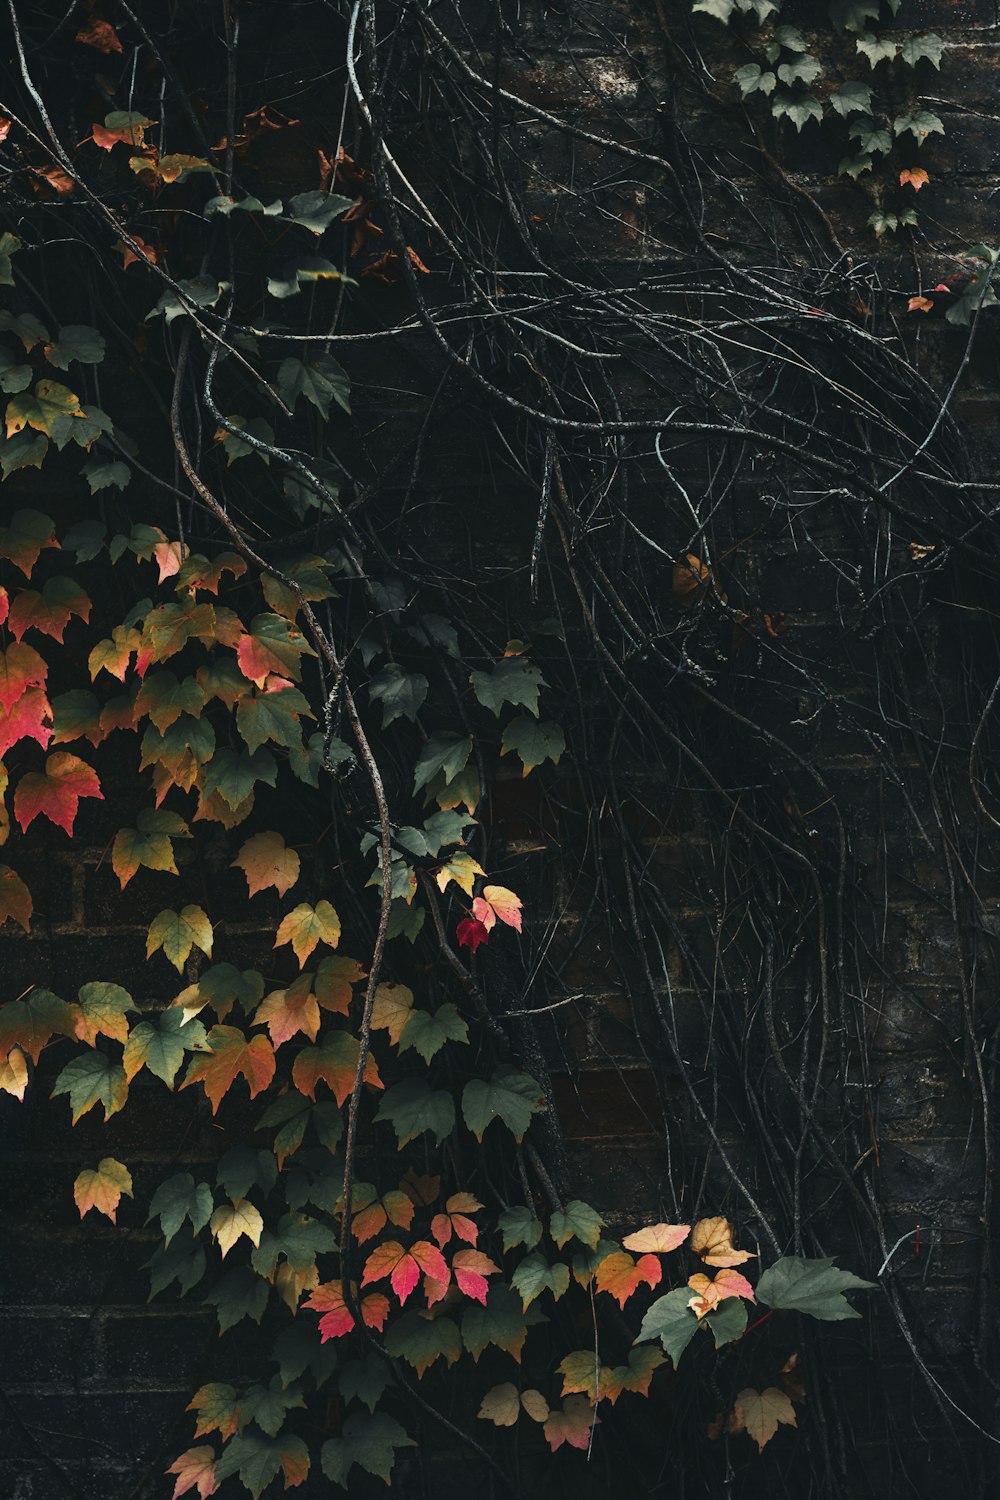 덩굴과 나뭇잎으로 뒤덮인 벽돌 벽